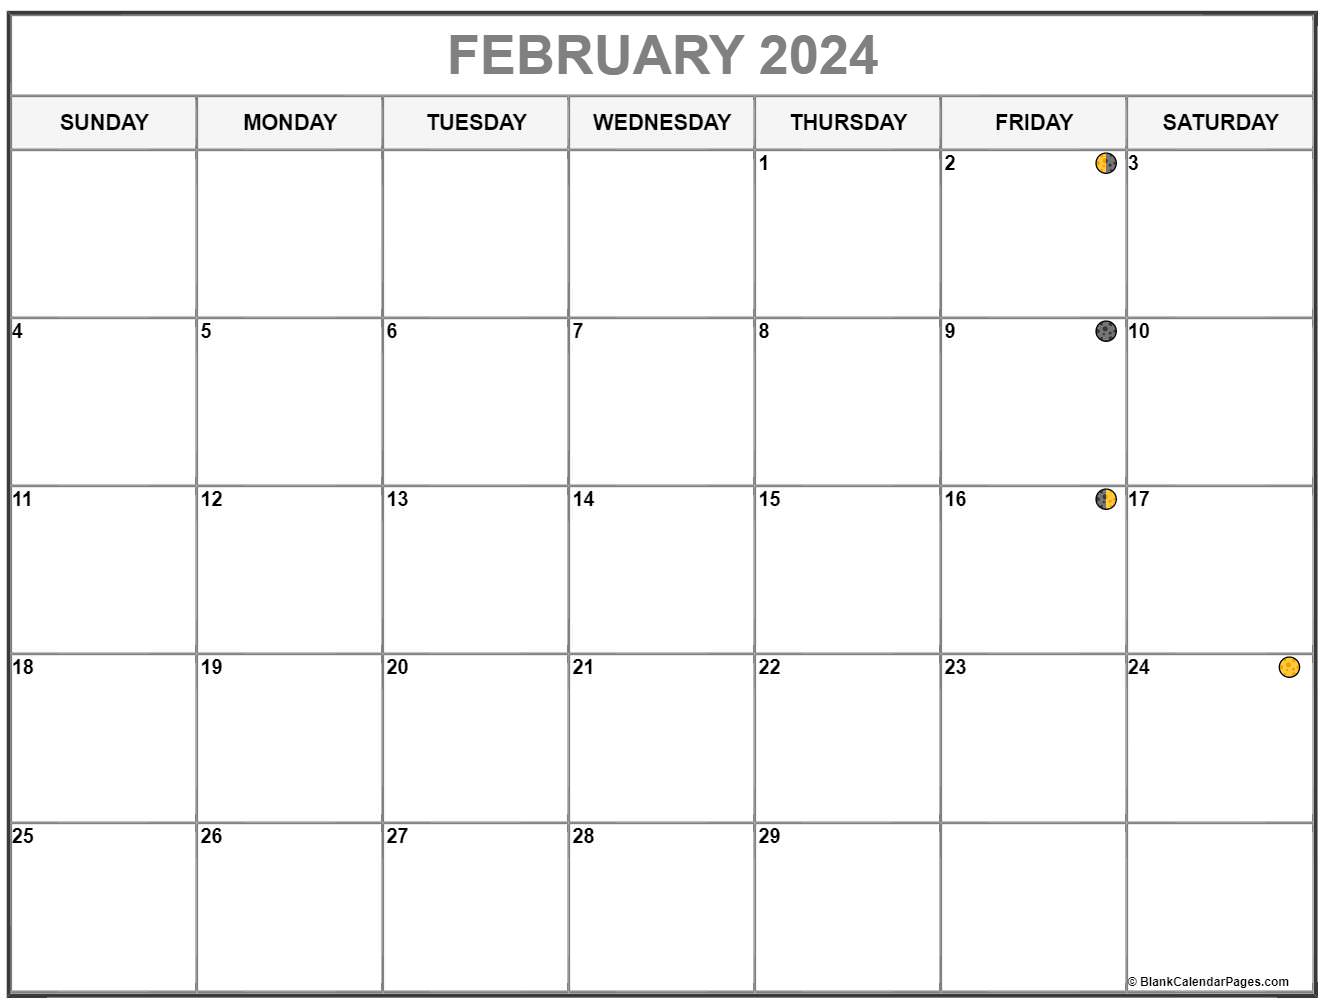 Moon Calendar February 2022 February 2022 Lunar Calendar | Moon Phase Calendar